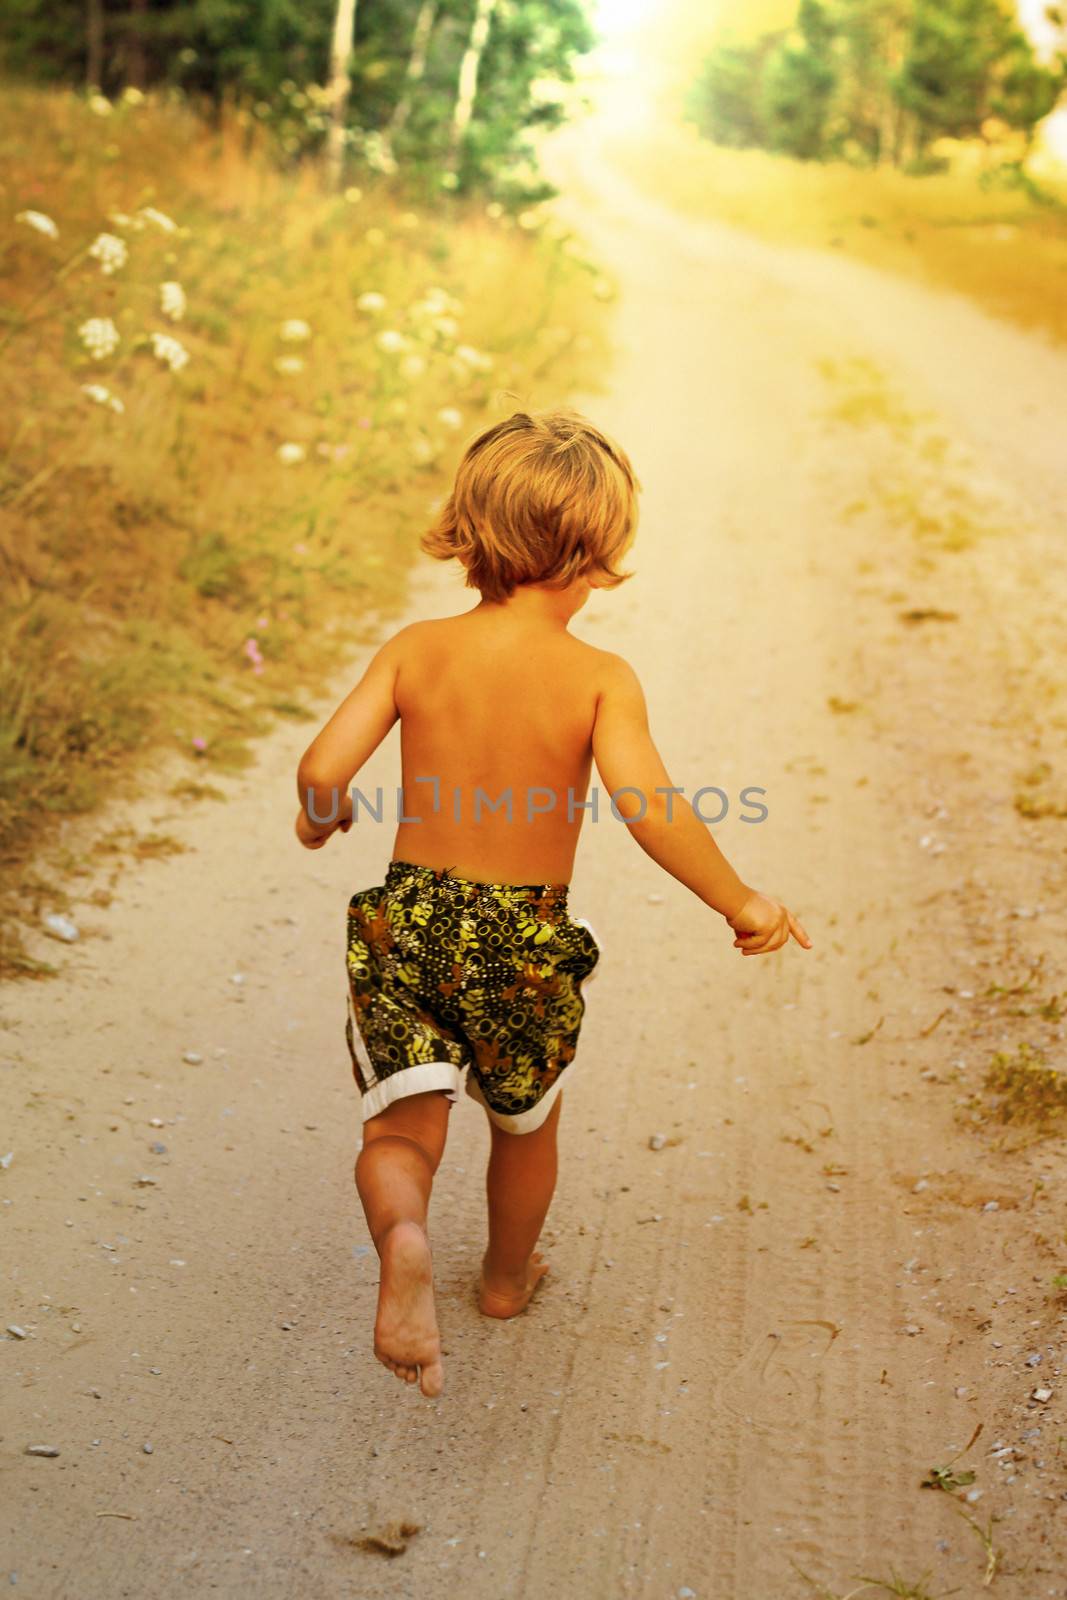 Boy running along road in park, outdoor